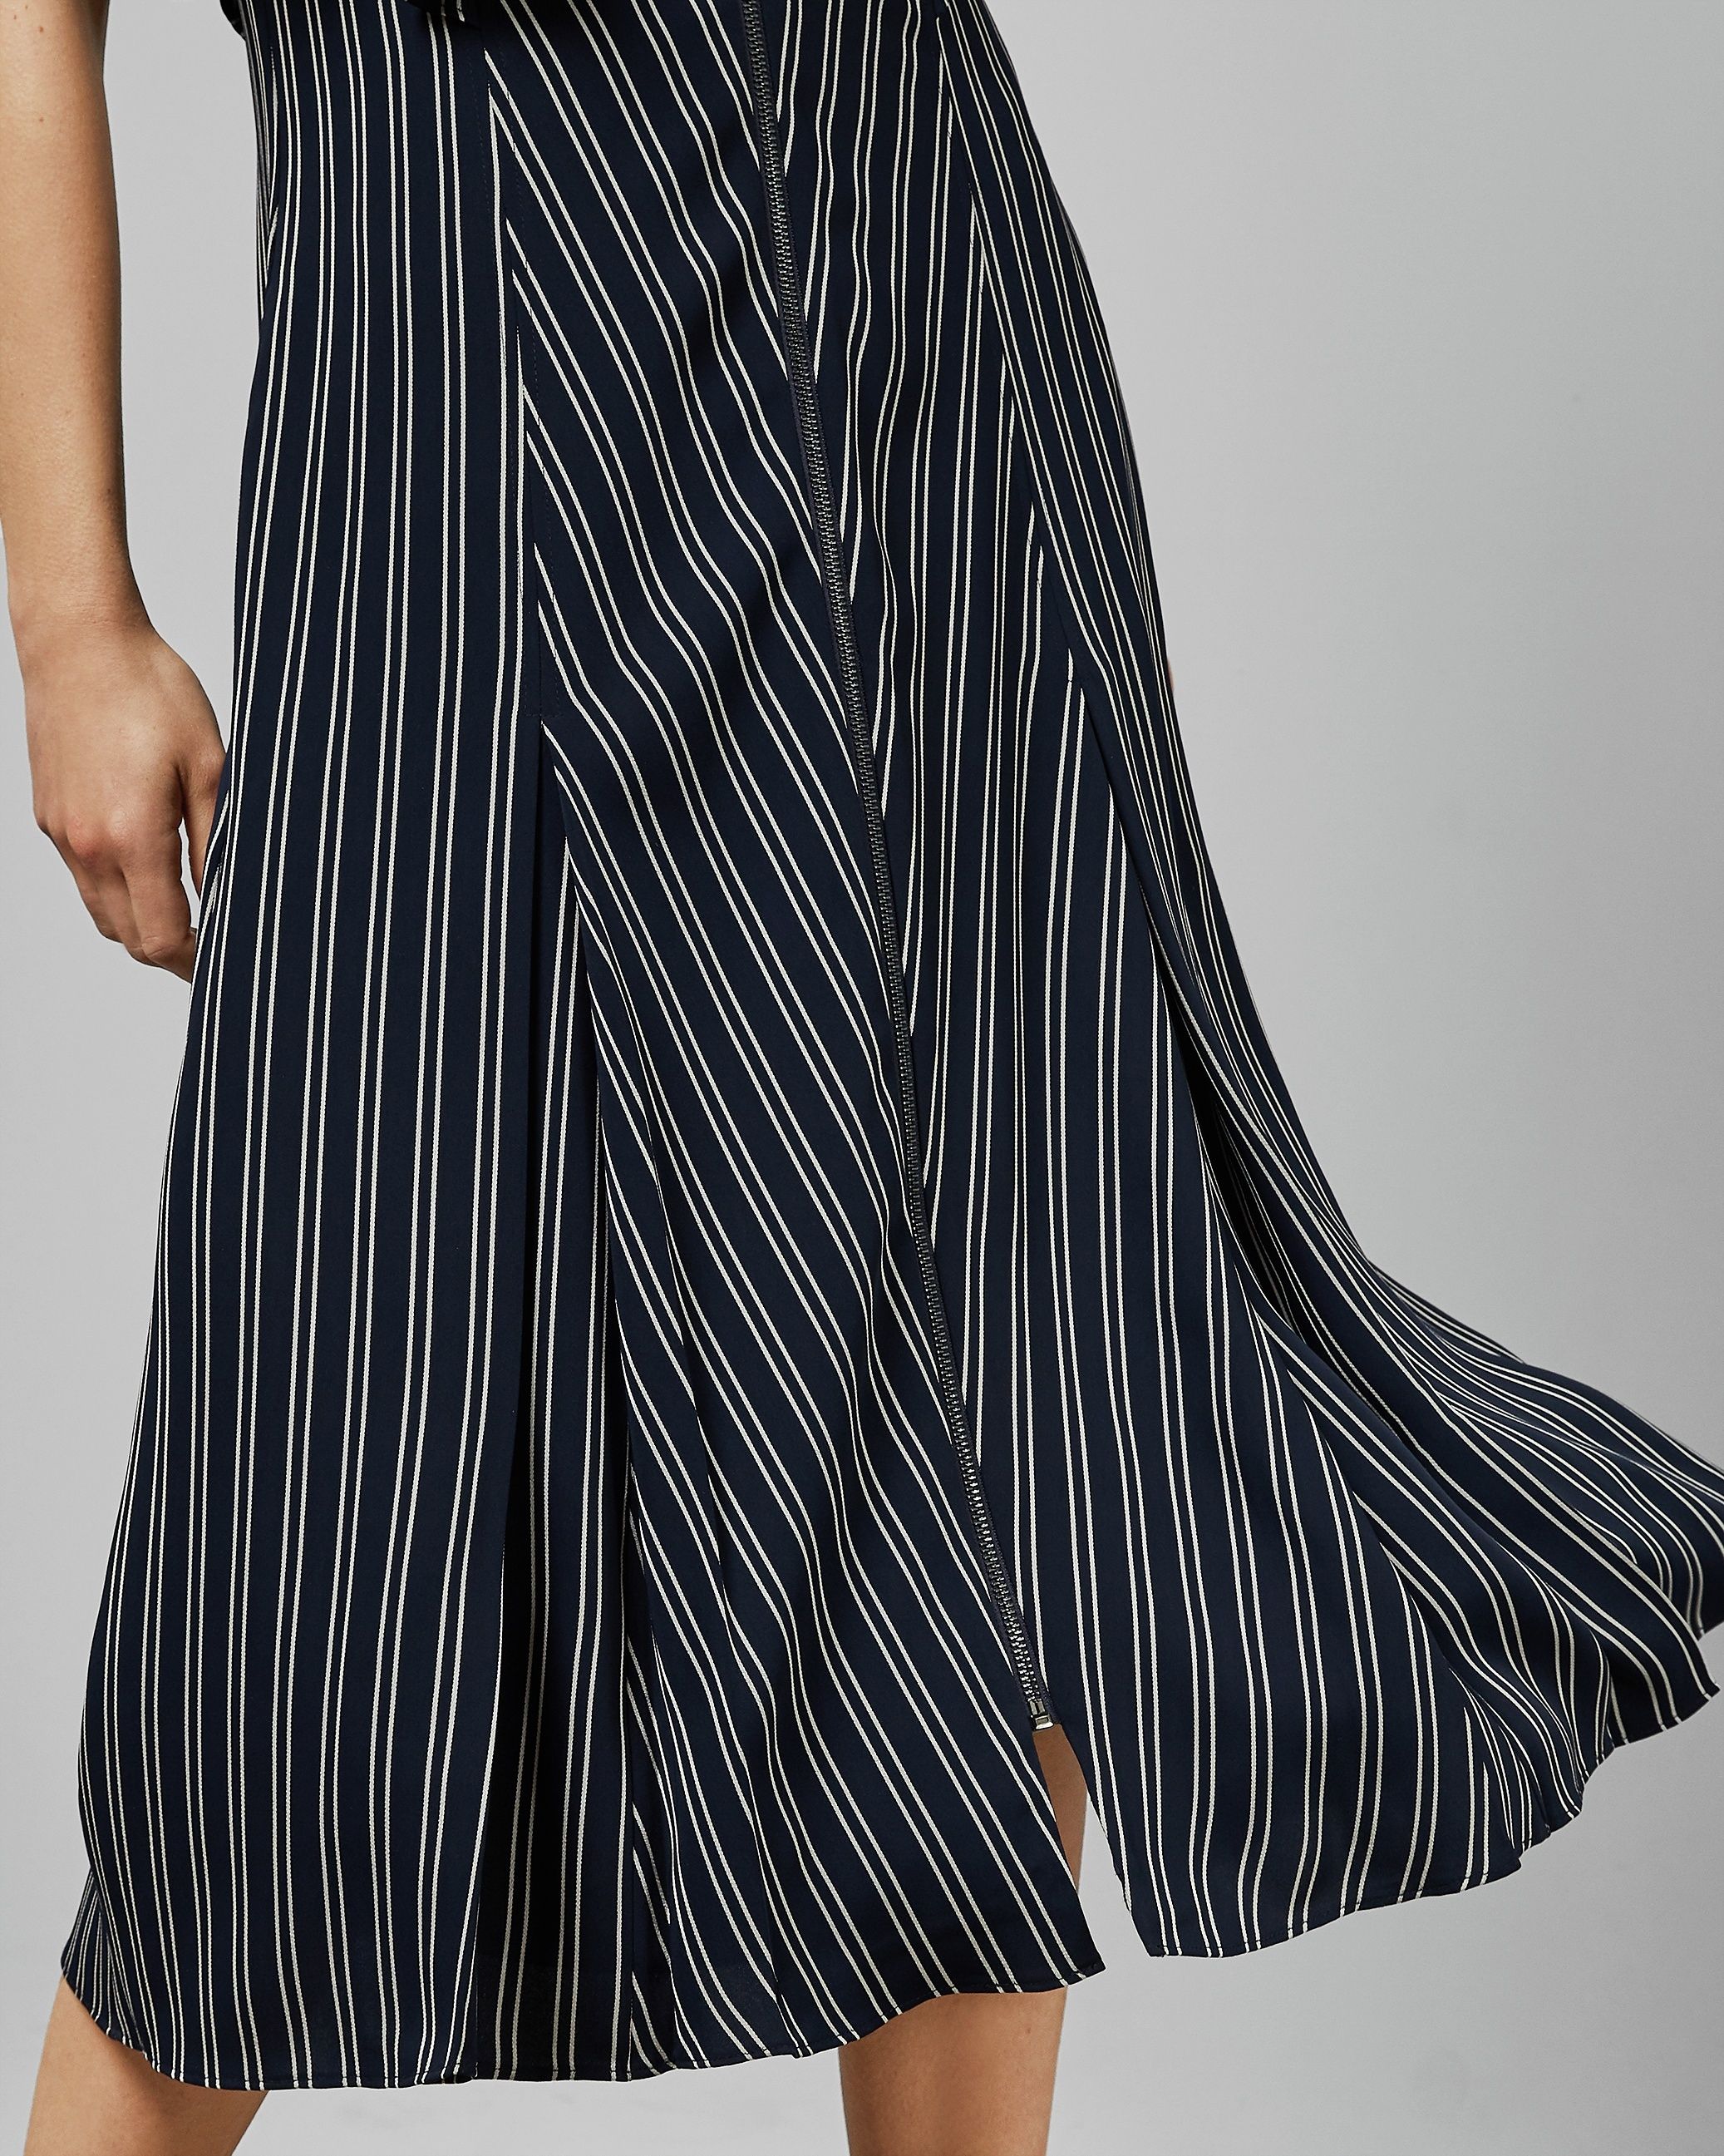 Zip Front Striped Midi Dress